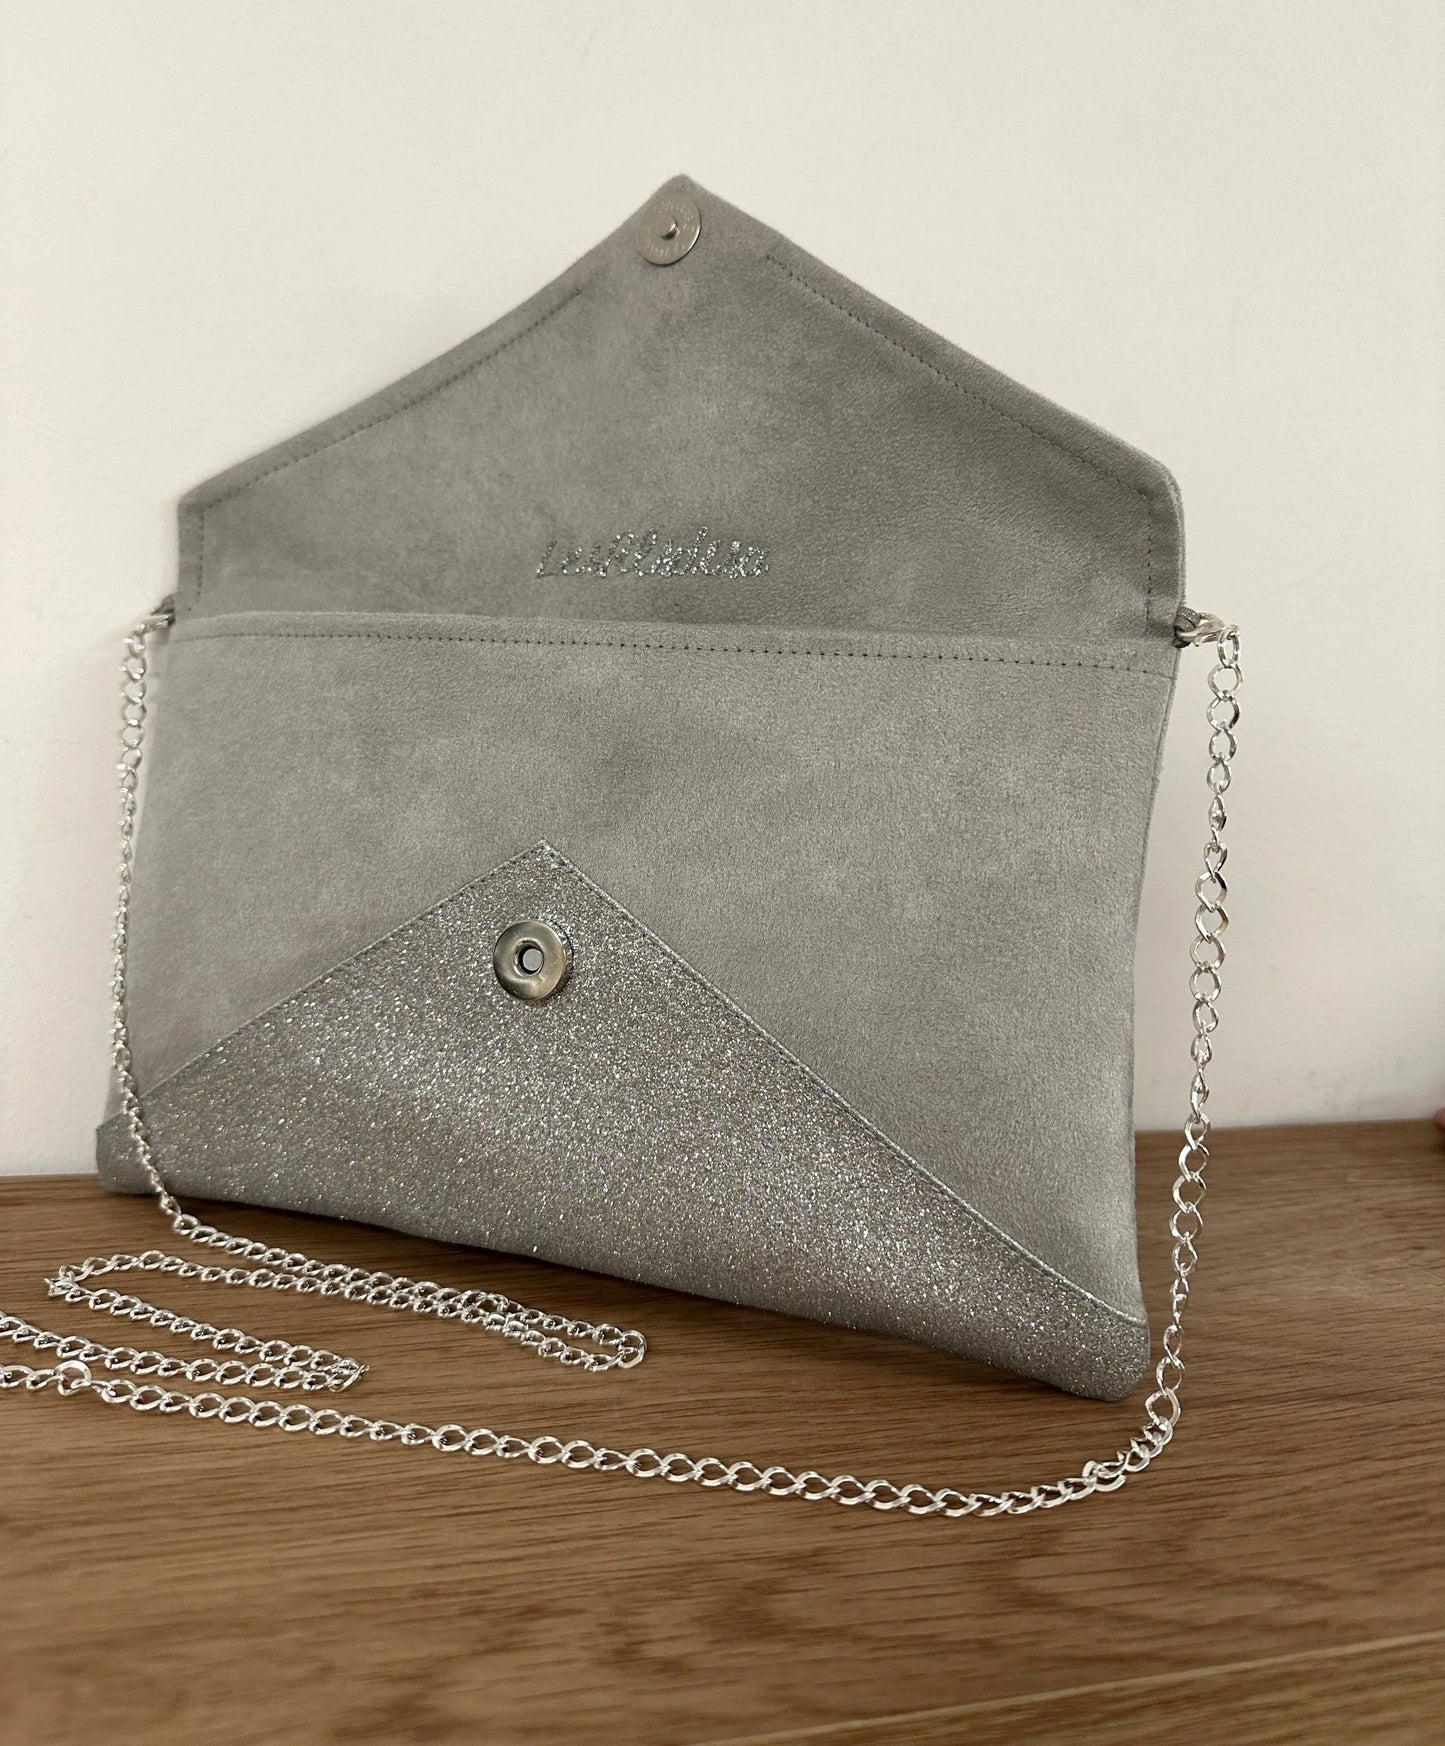 le sac pochette Isa gris perle à paillettes argentées, ouvert.